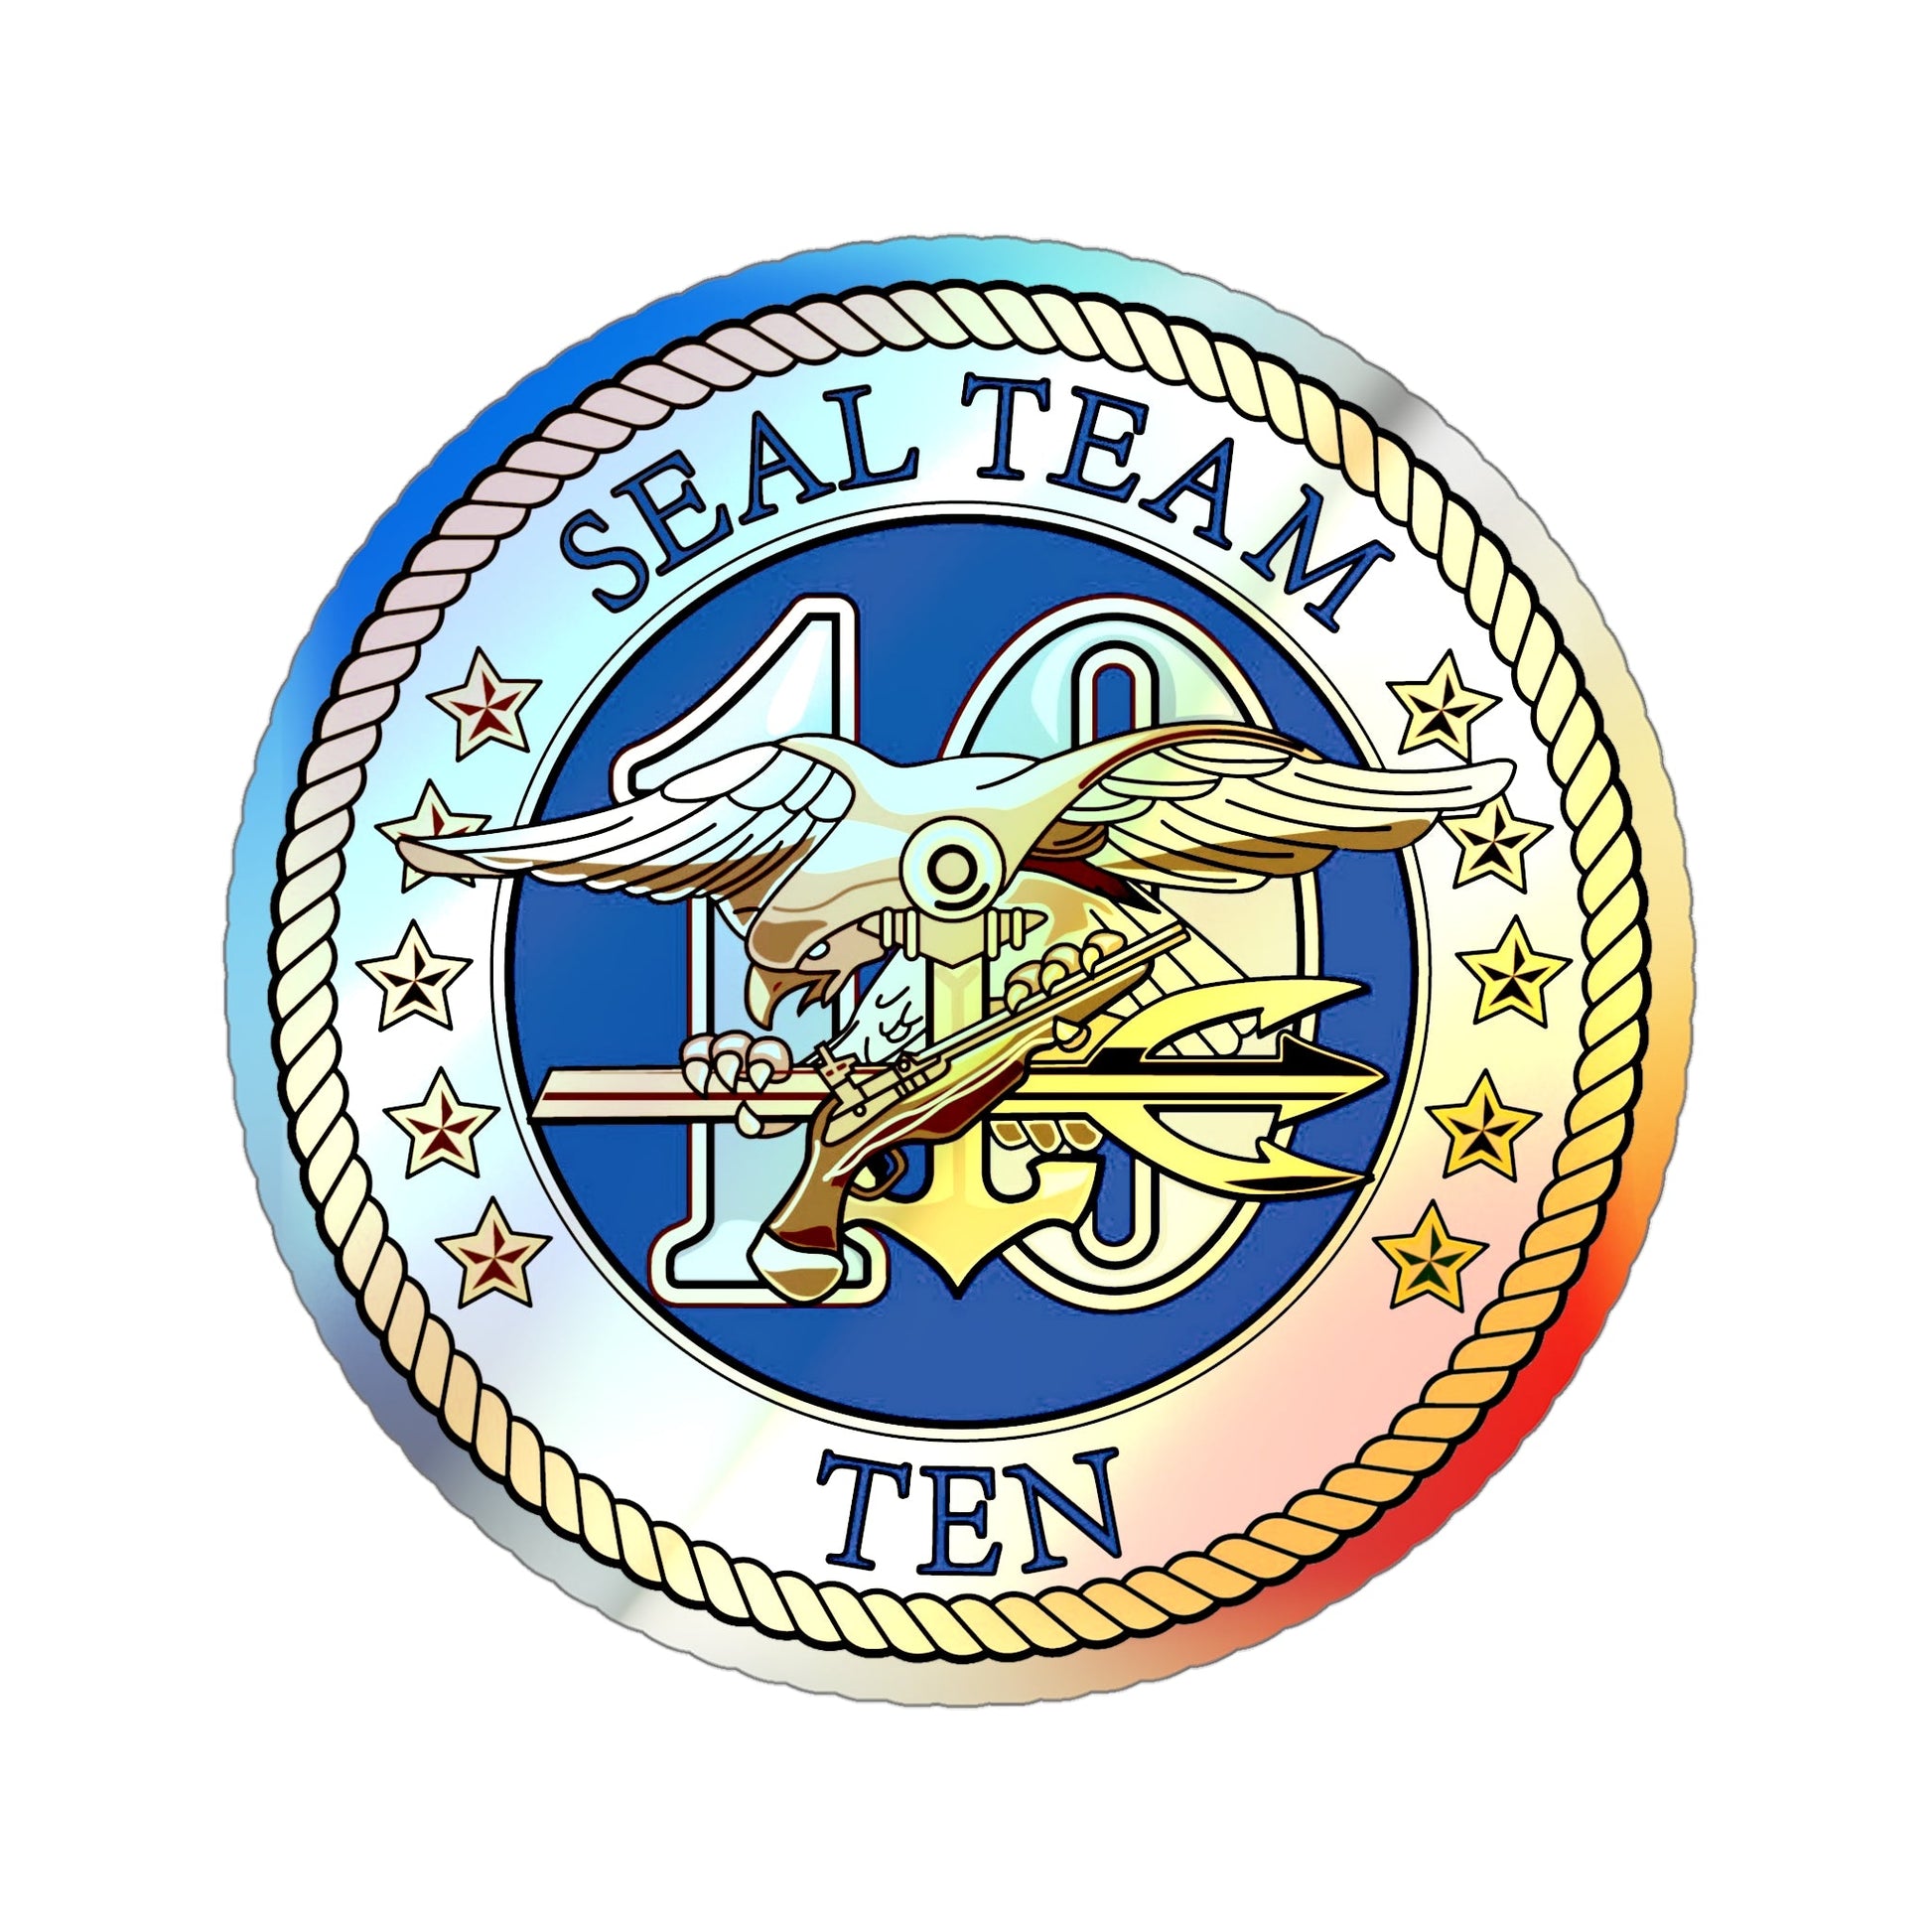 Seal Team 10 (U.S. Navy) Holographic STICKER Die-Cut Vinyl Decal-5 Inch-The Sticker Space